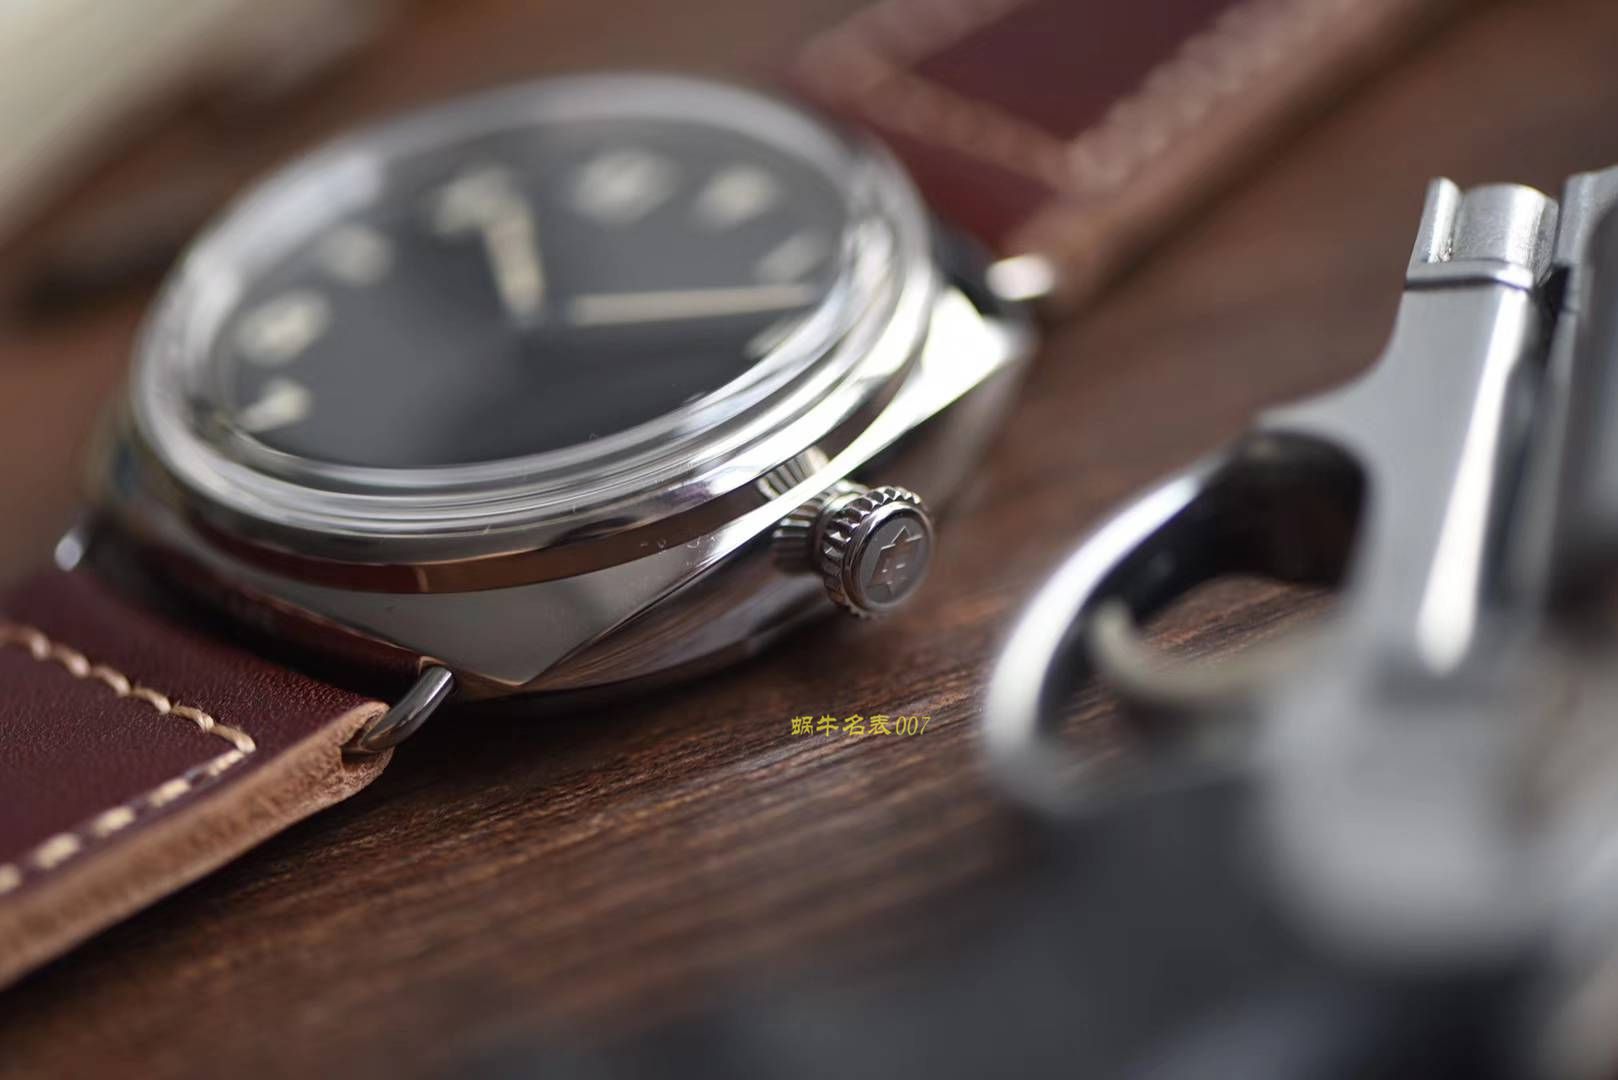 沛纳海LUMINOR系列PAM00488腕表【SF一比一顶级复刻手表】 / sfpam448